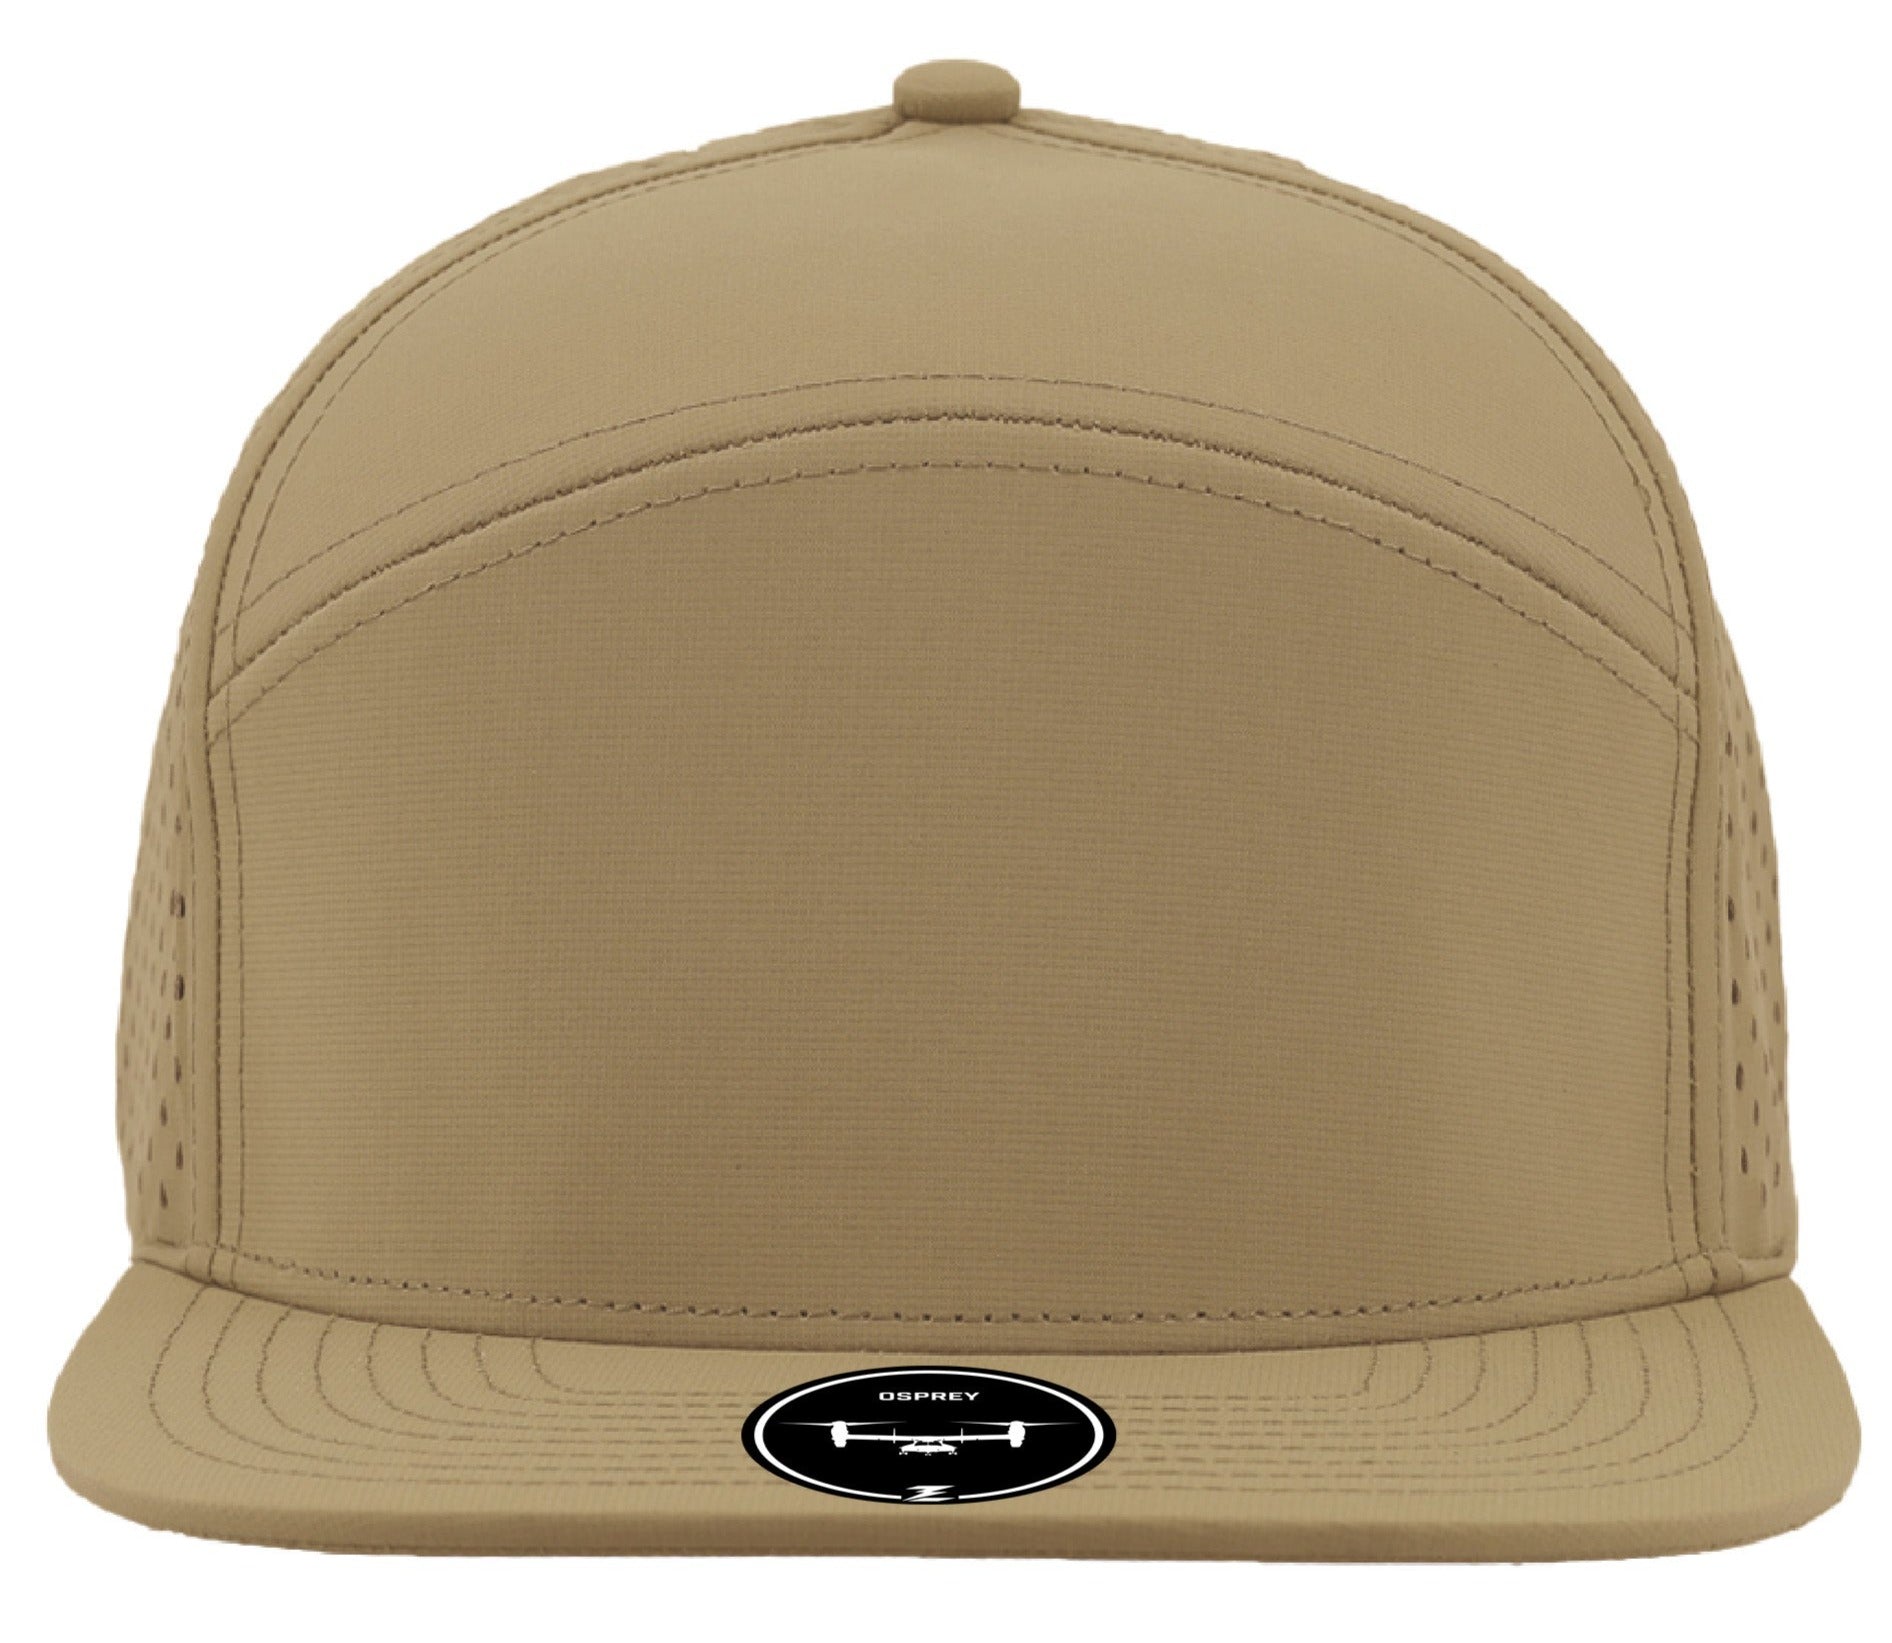 osprey Custom Hat khaki snapback 7 panel hat